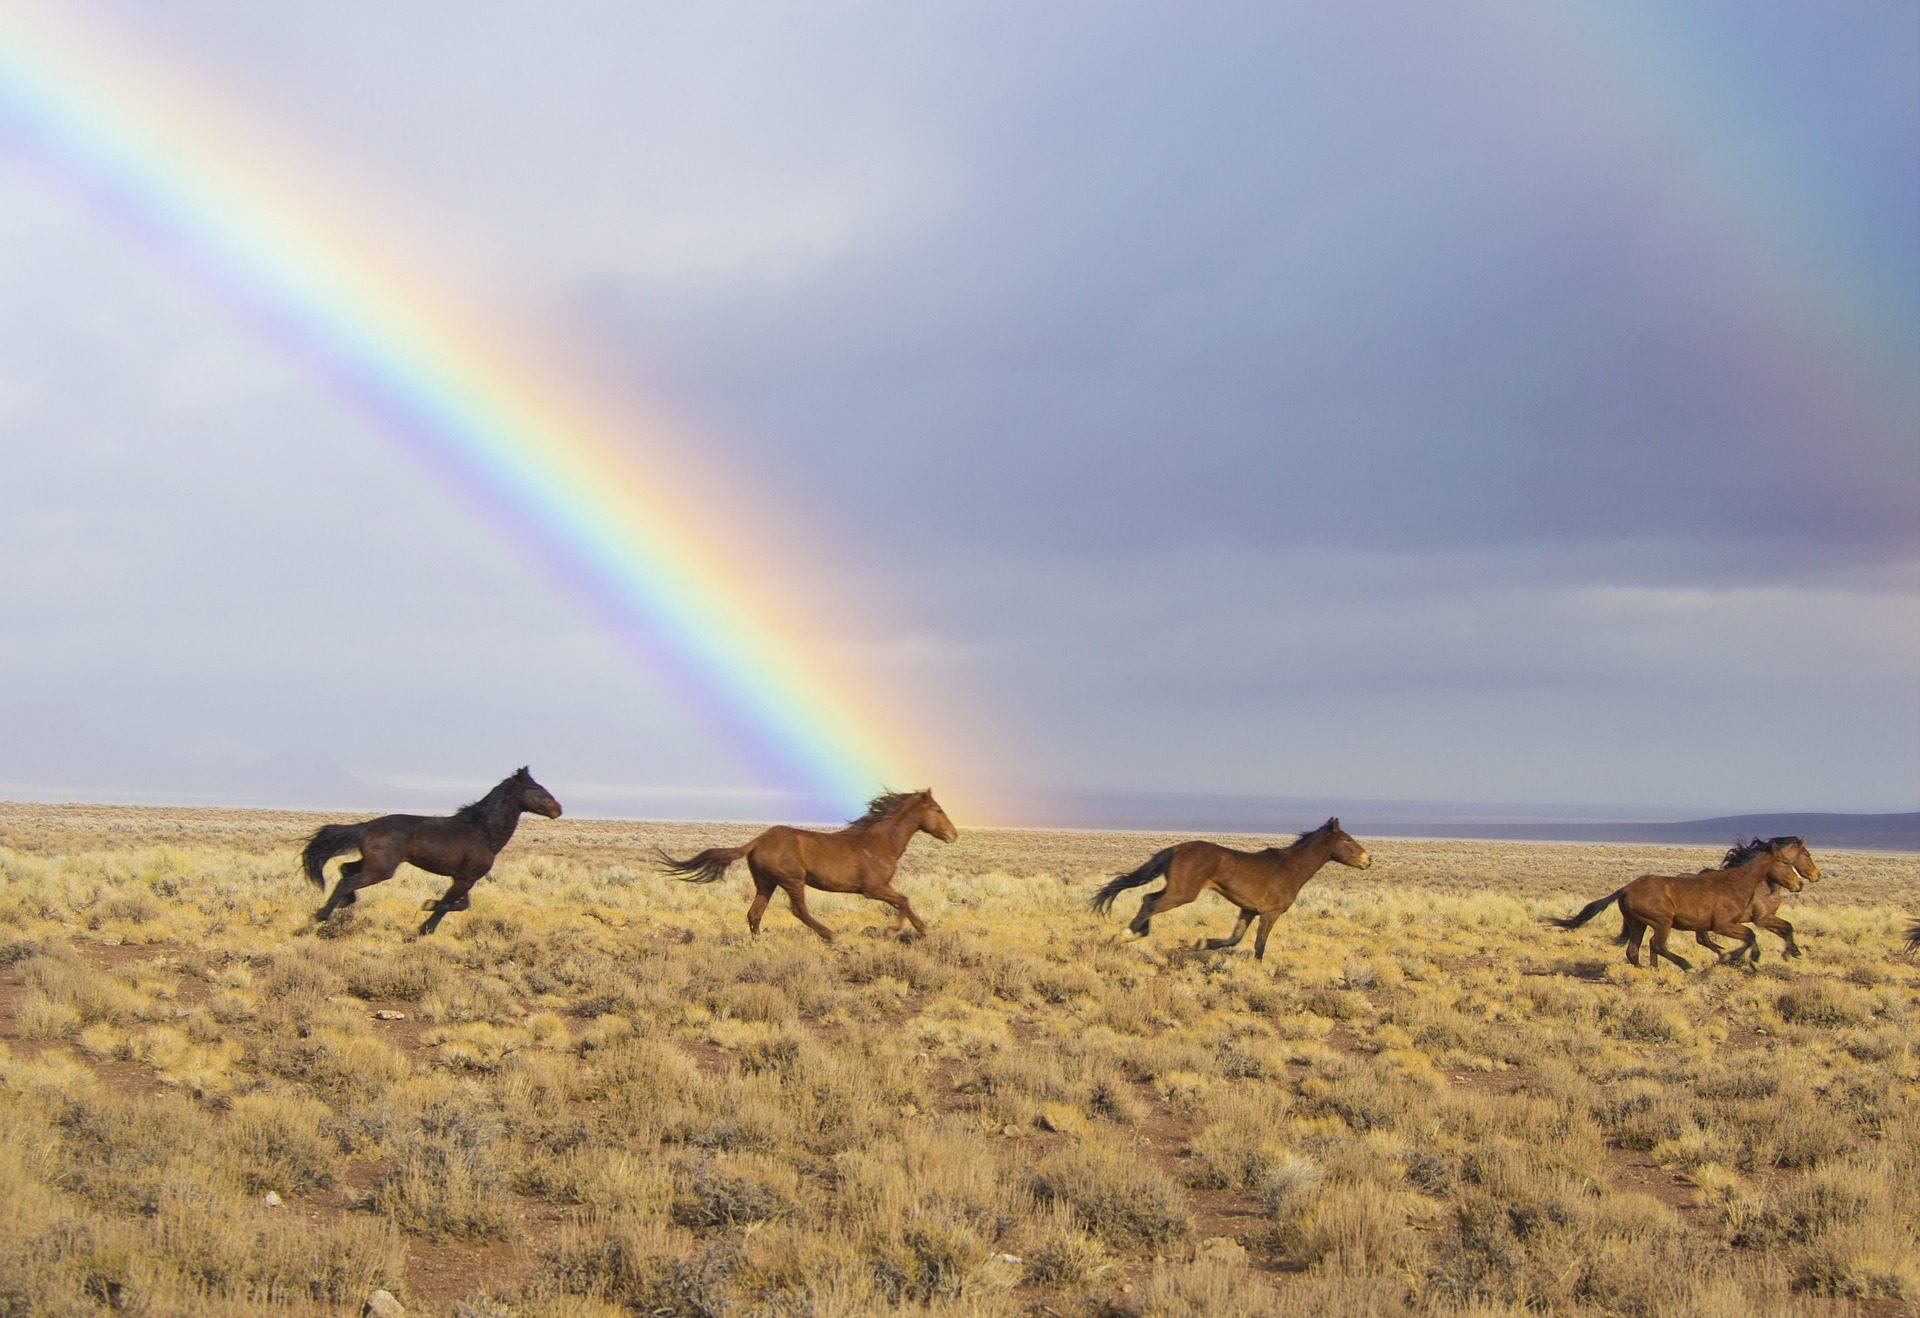 wild-horses-2239420_1920-skeeze-pixabay.jpg